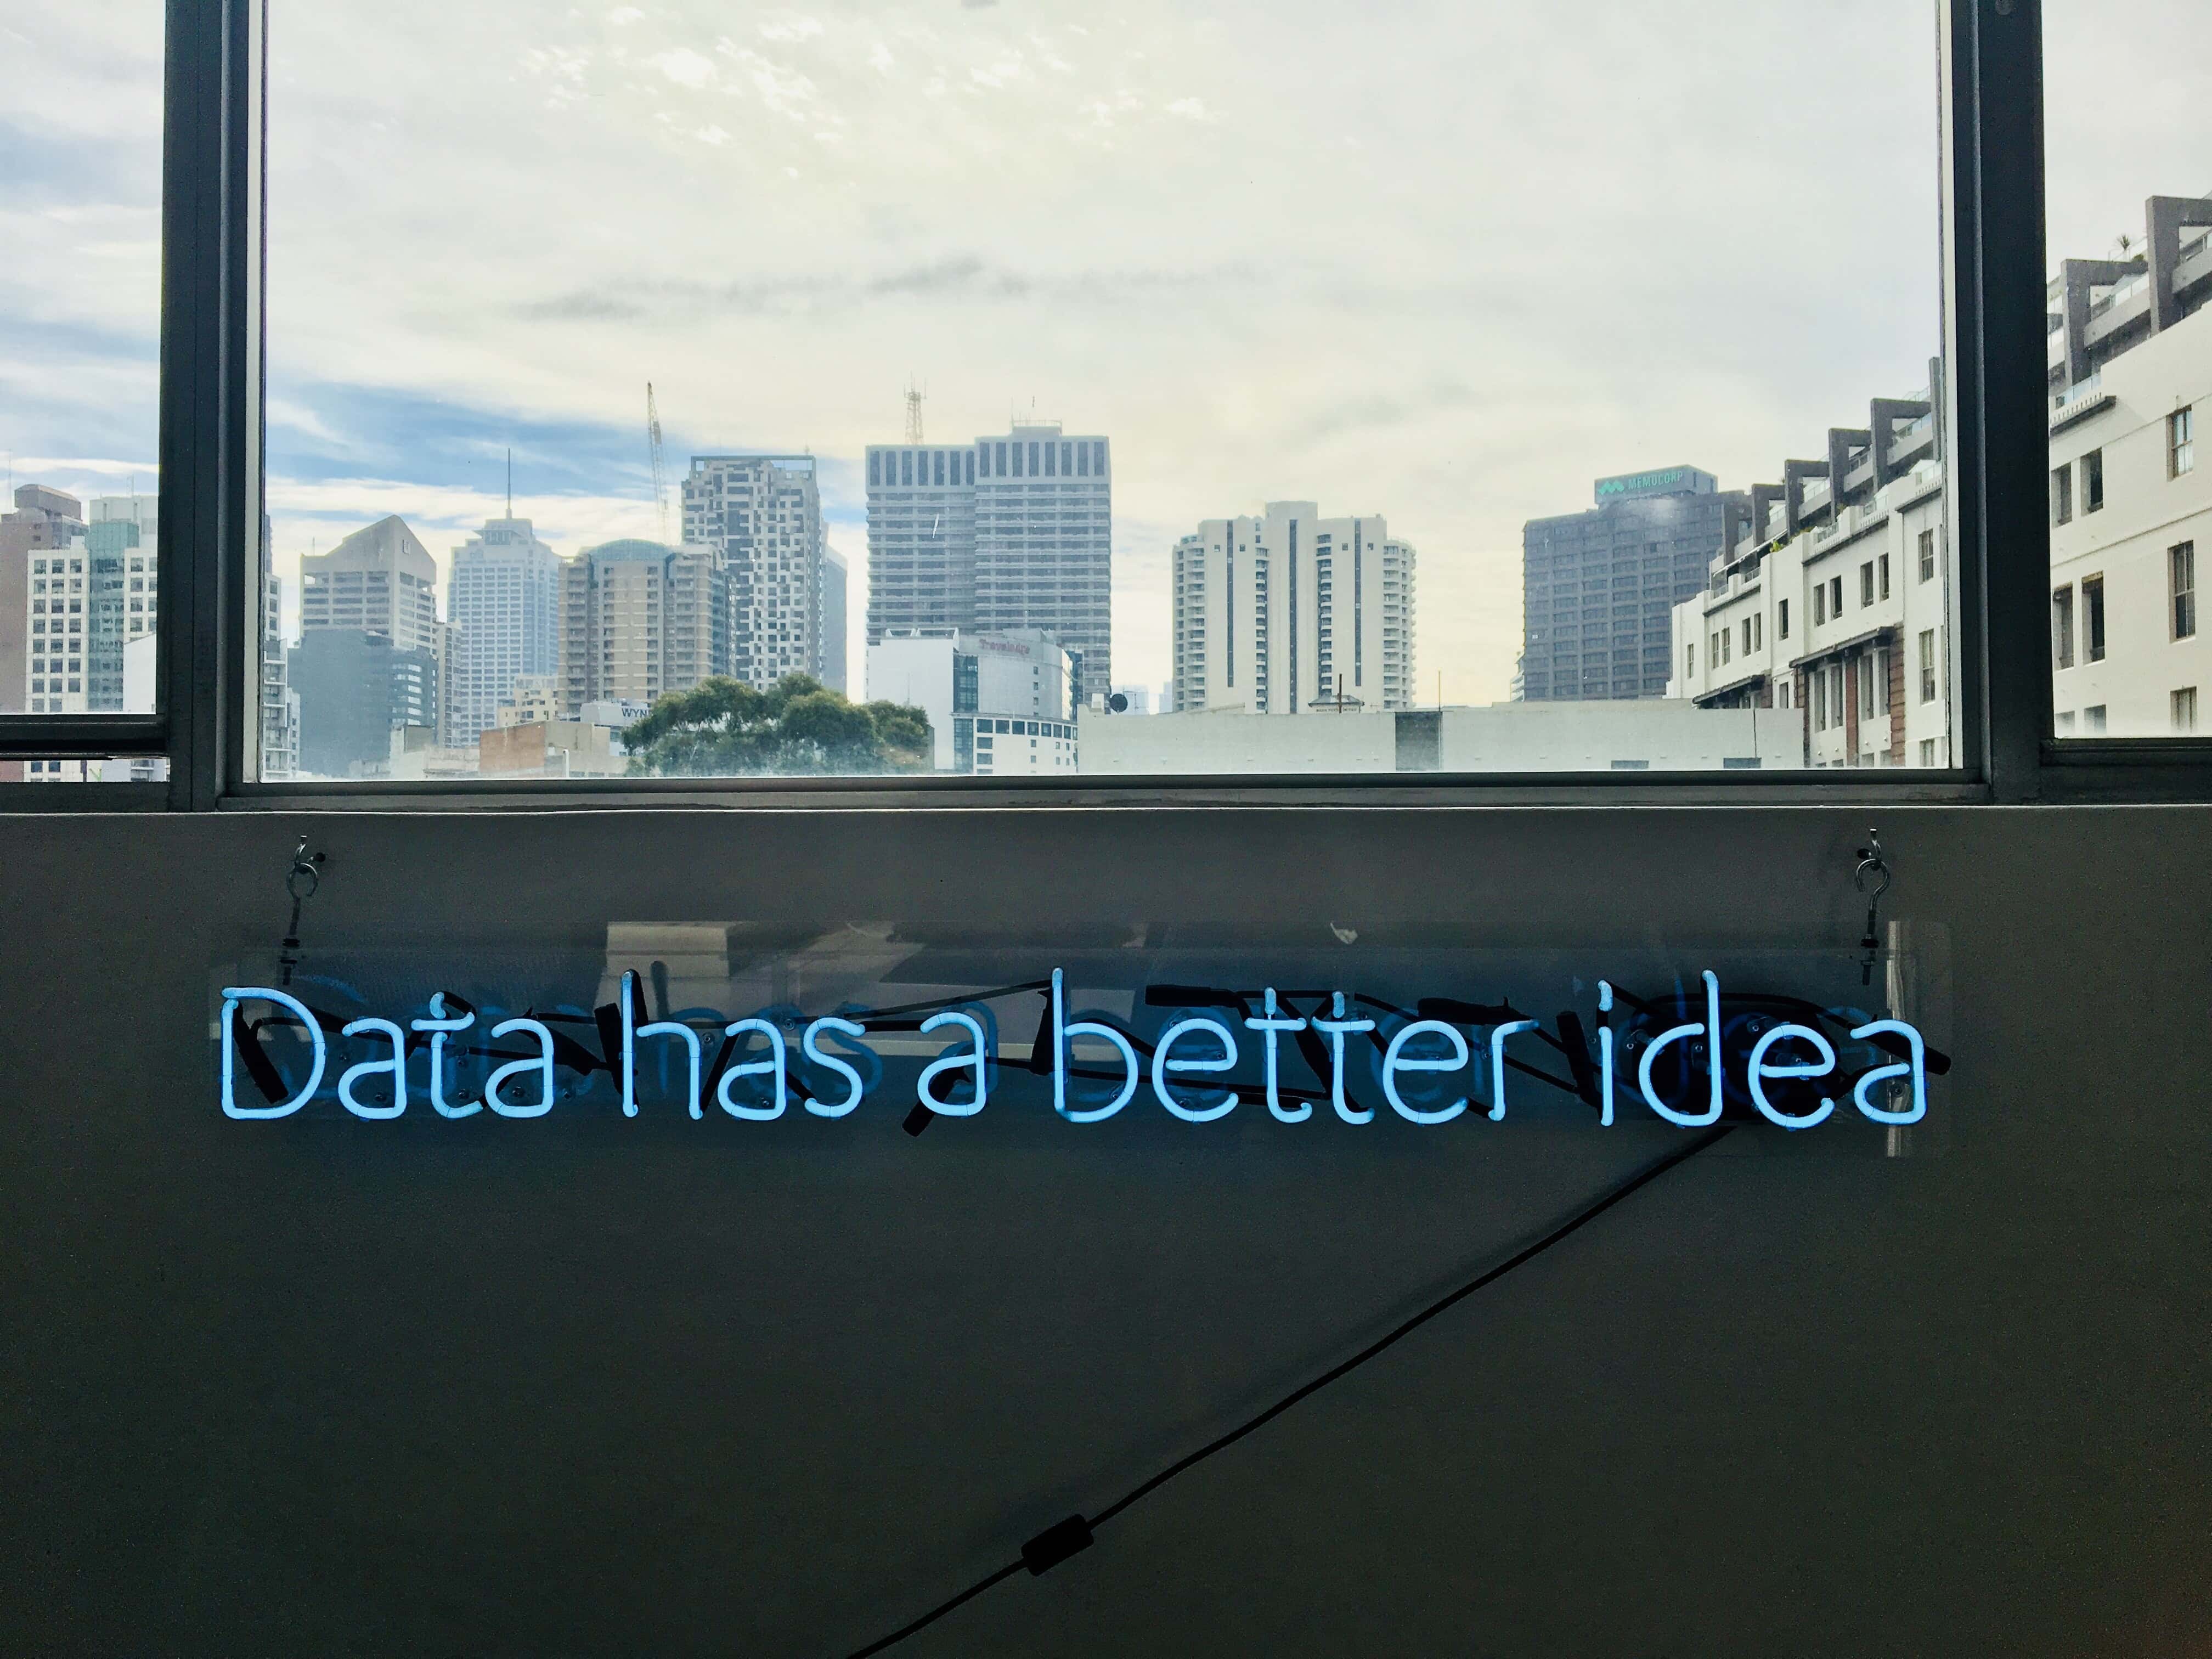 Neon data slogan